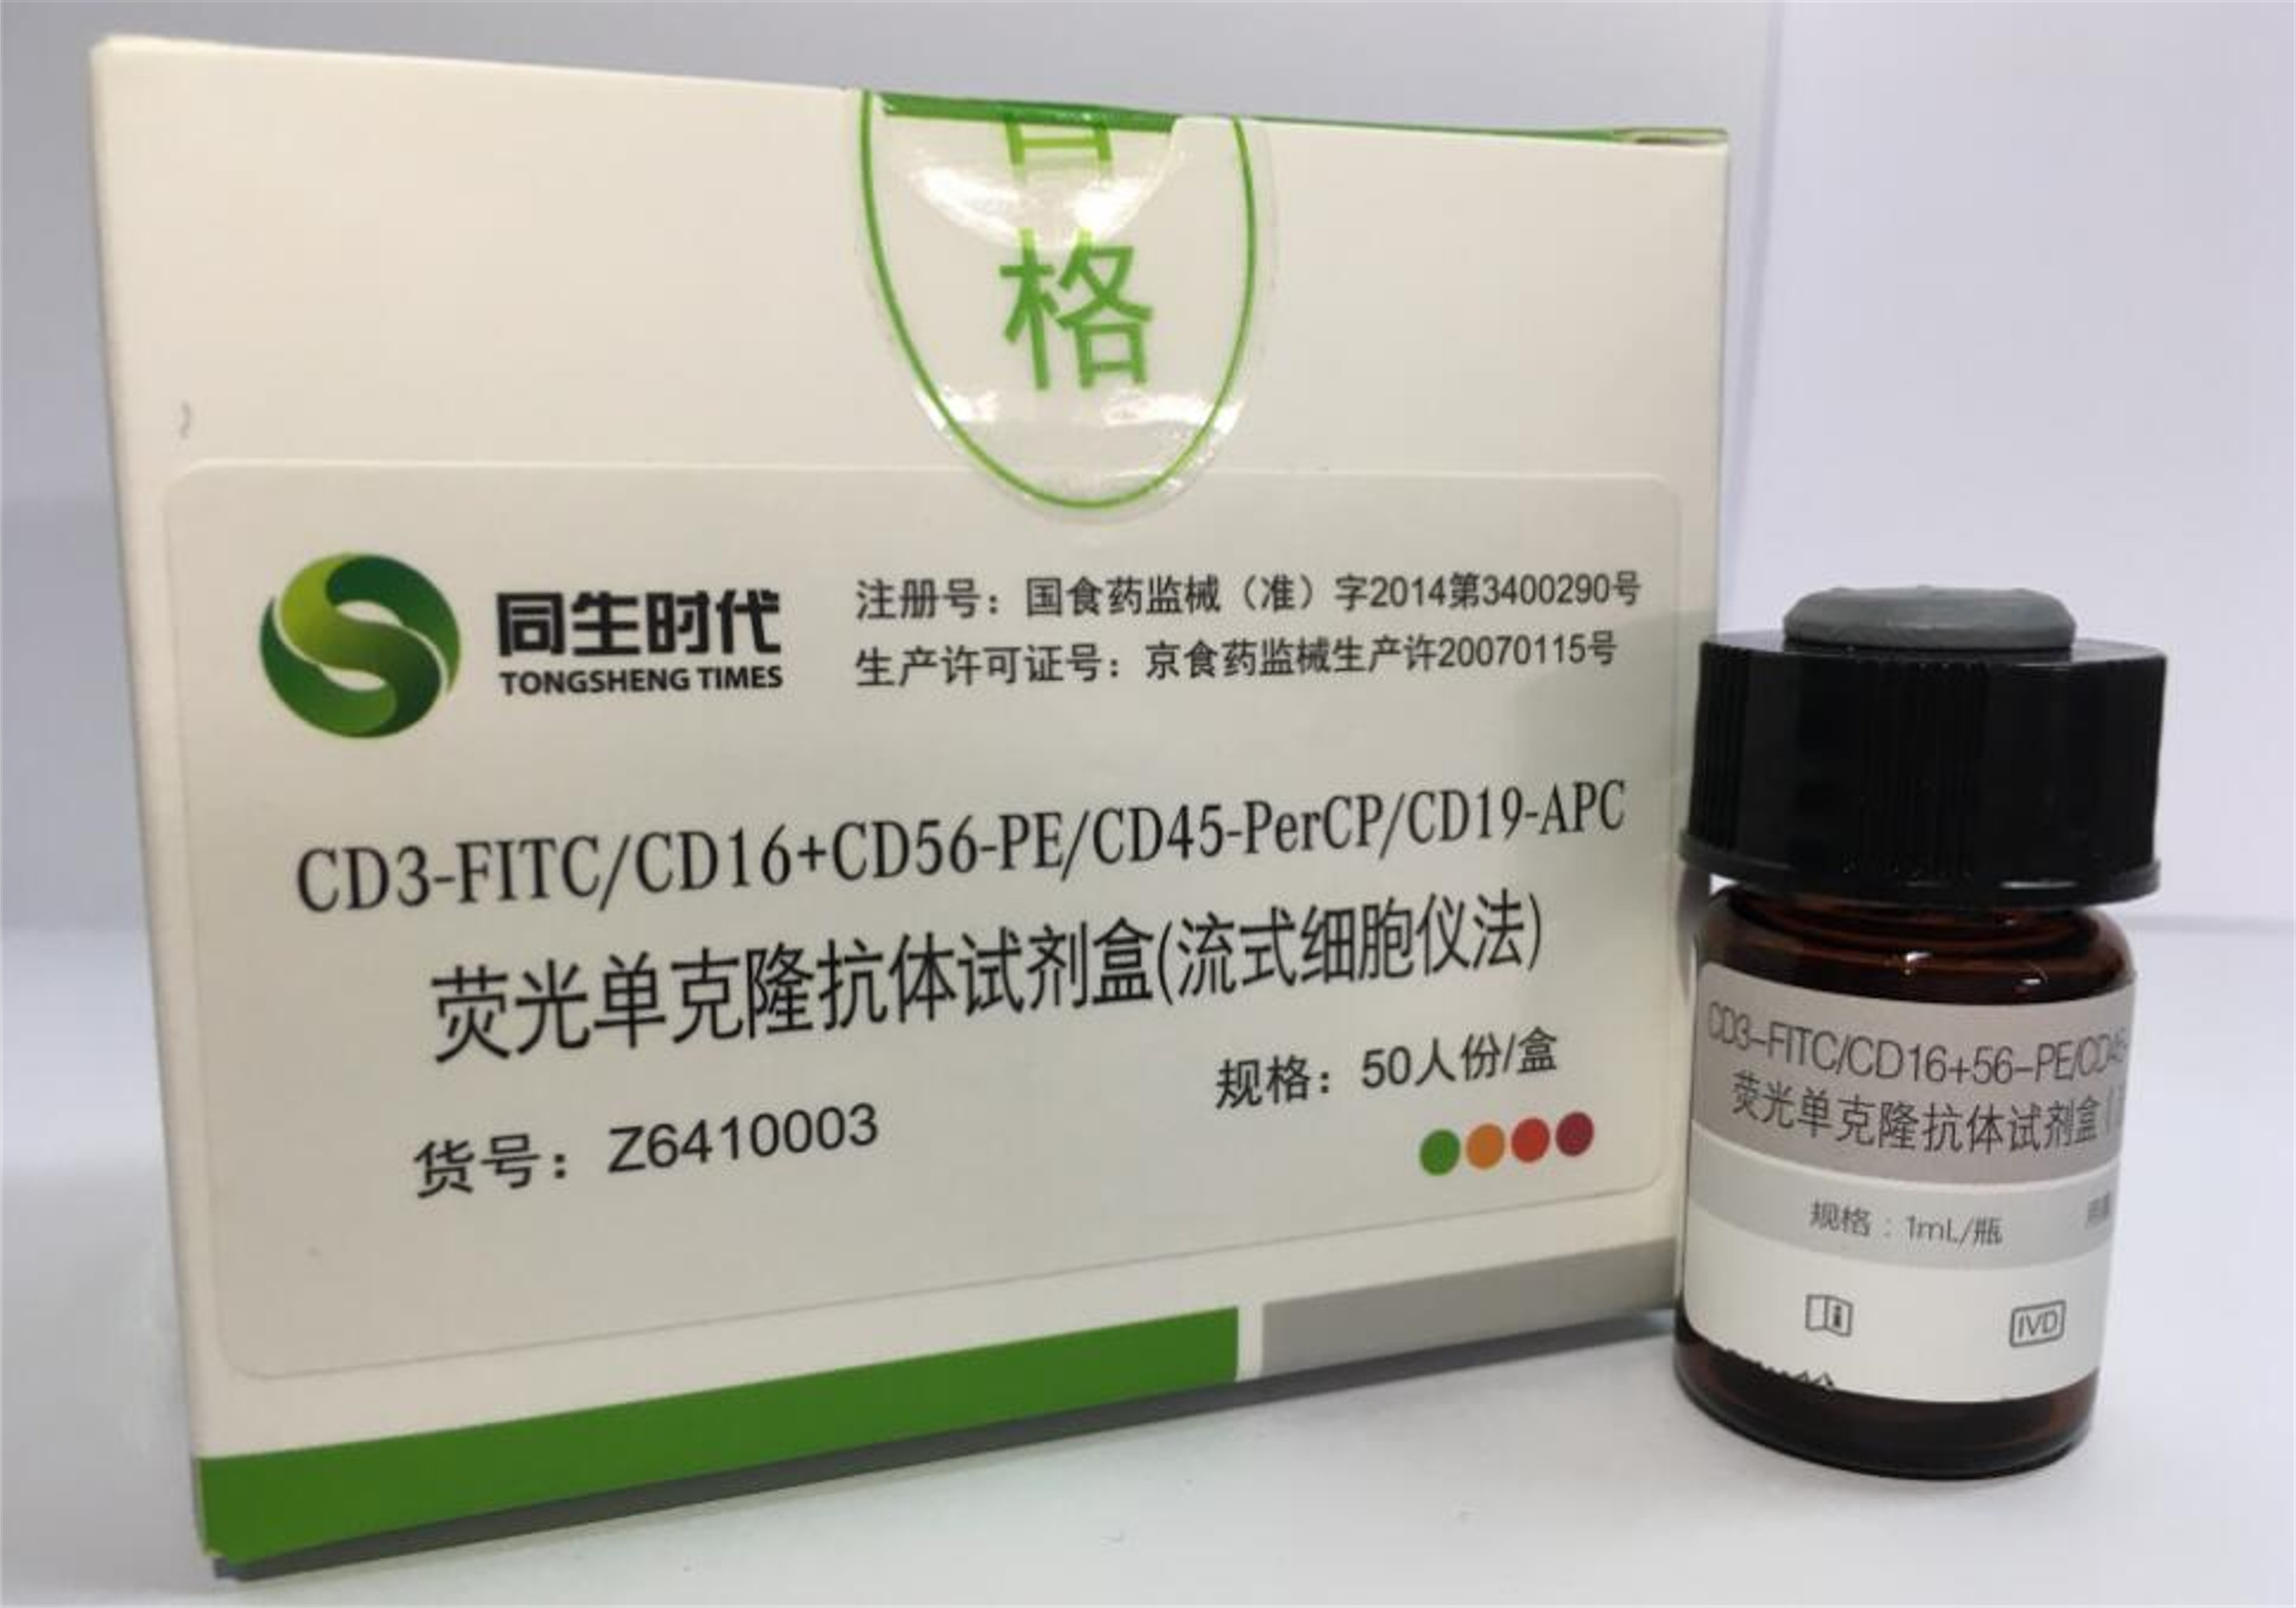 【同生】CD3-FITC/CD16+CD56-PE/CD45-PerCP/CD19-APC荧光单克隆抗体试剂盒（流式细胞仪法）